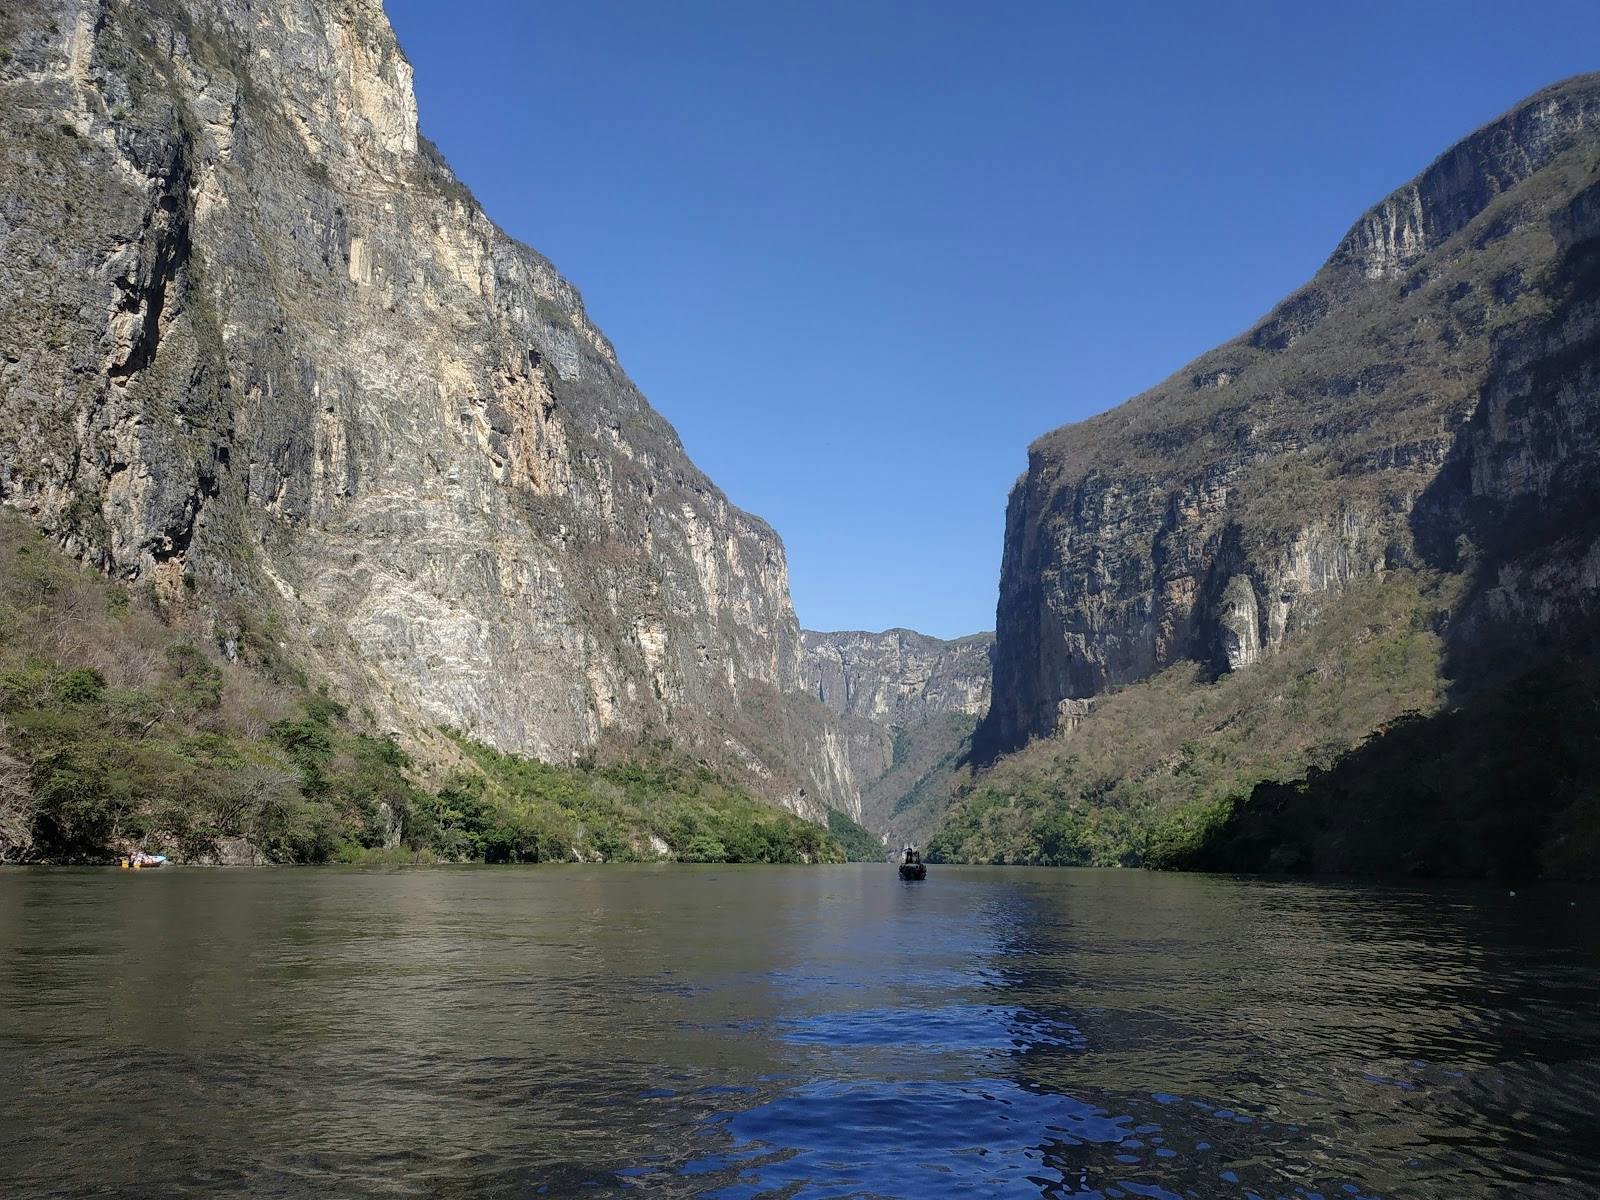 Image - Parque Nacional Cañón del Sumidero